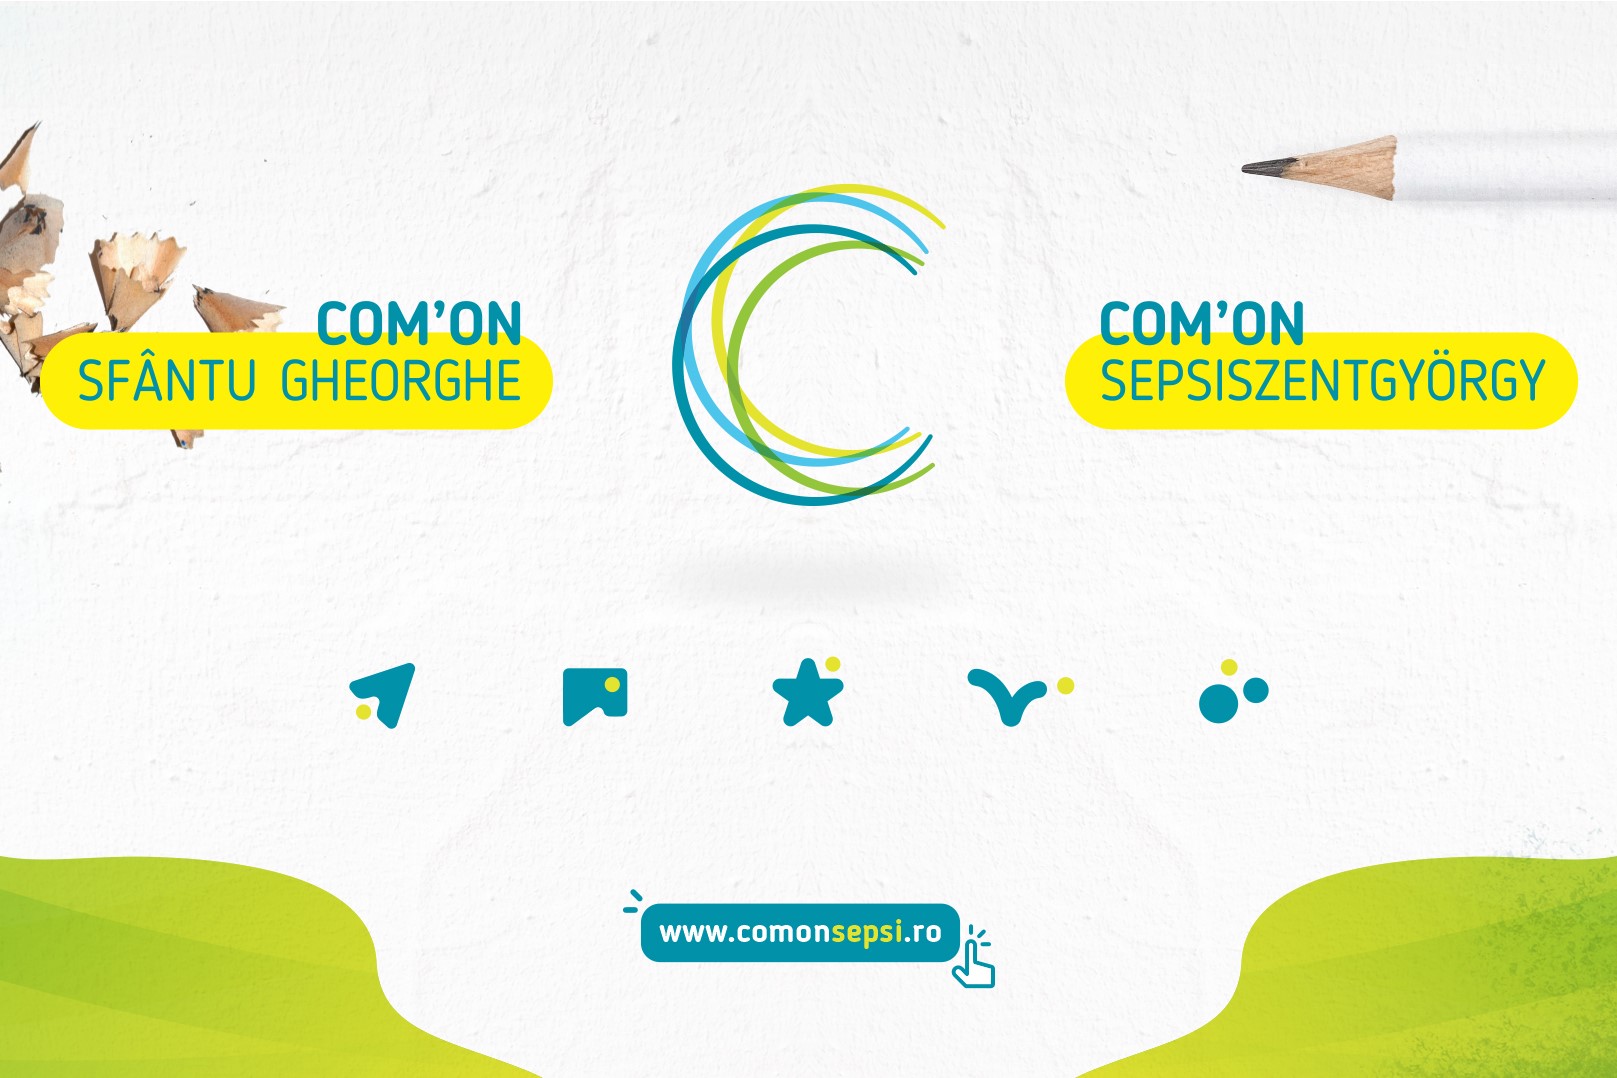 ComOn Sepsi: Kezdetét vette a közösségi részvételi folyamat nyertes kezdeményezéseinek megvalósítása